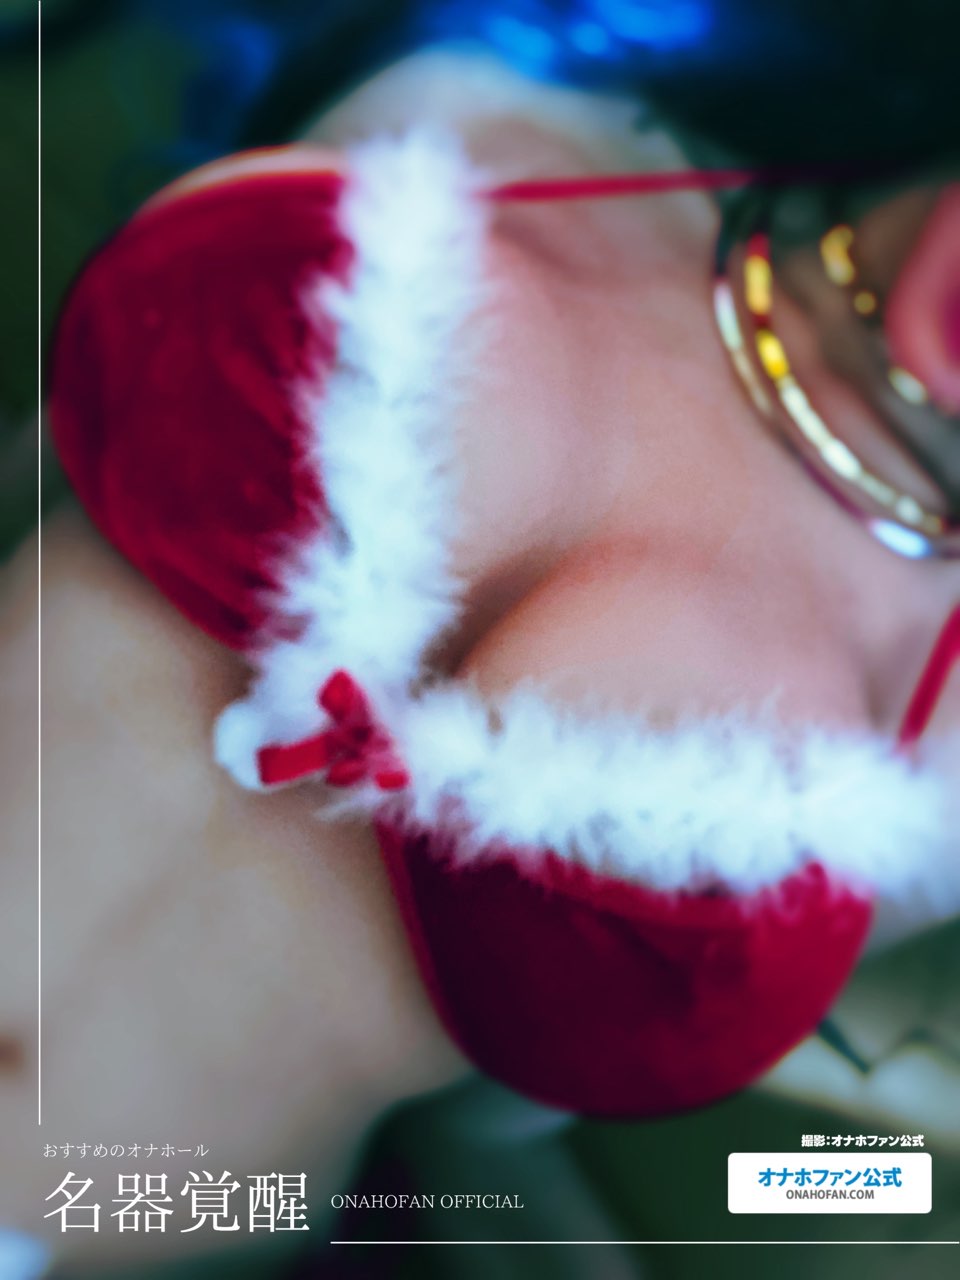 クリスマスコスでハンドオナホの『名器覚醒』をラブドールに装着して着衣セックスしてみた24